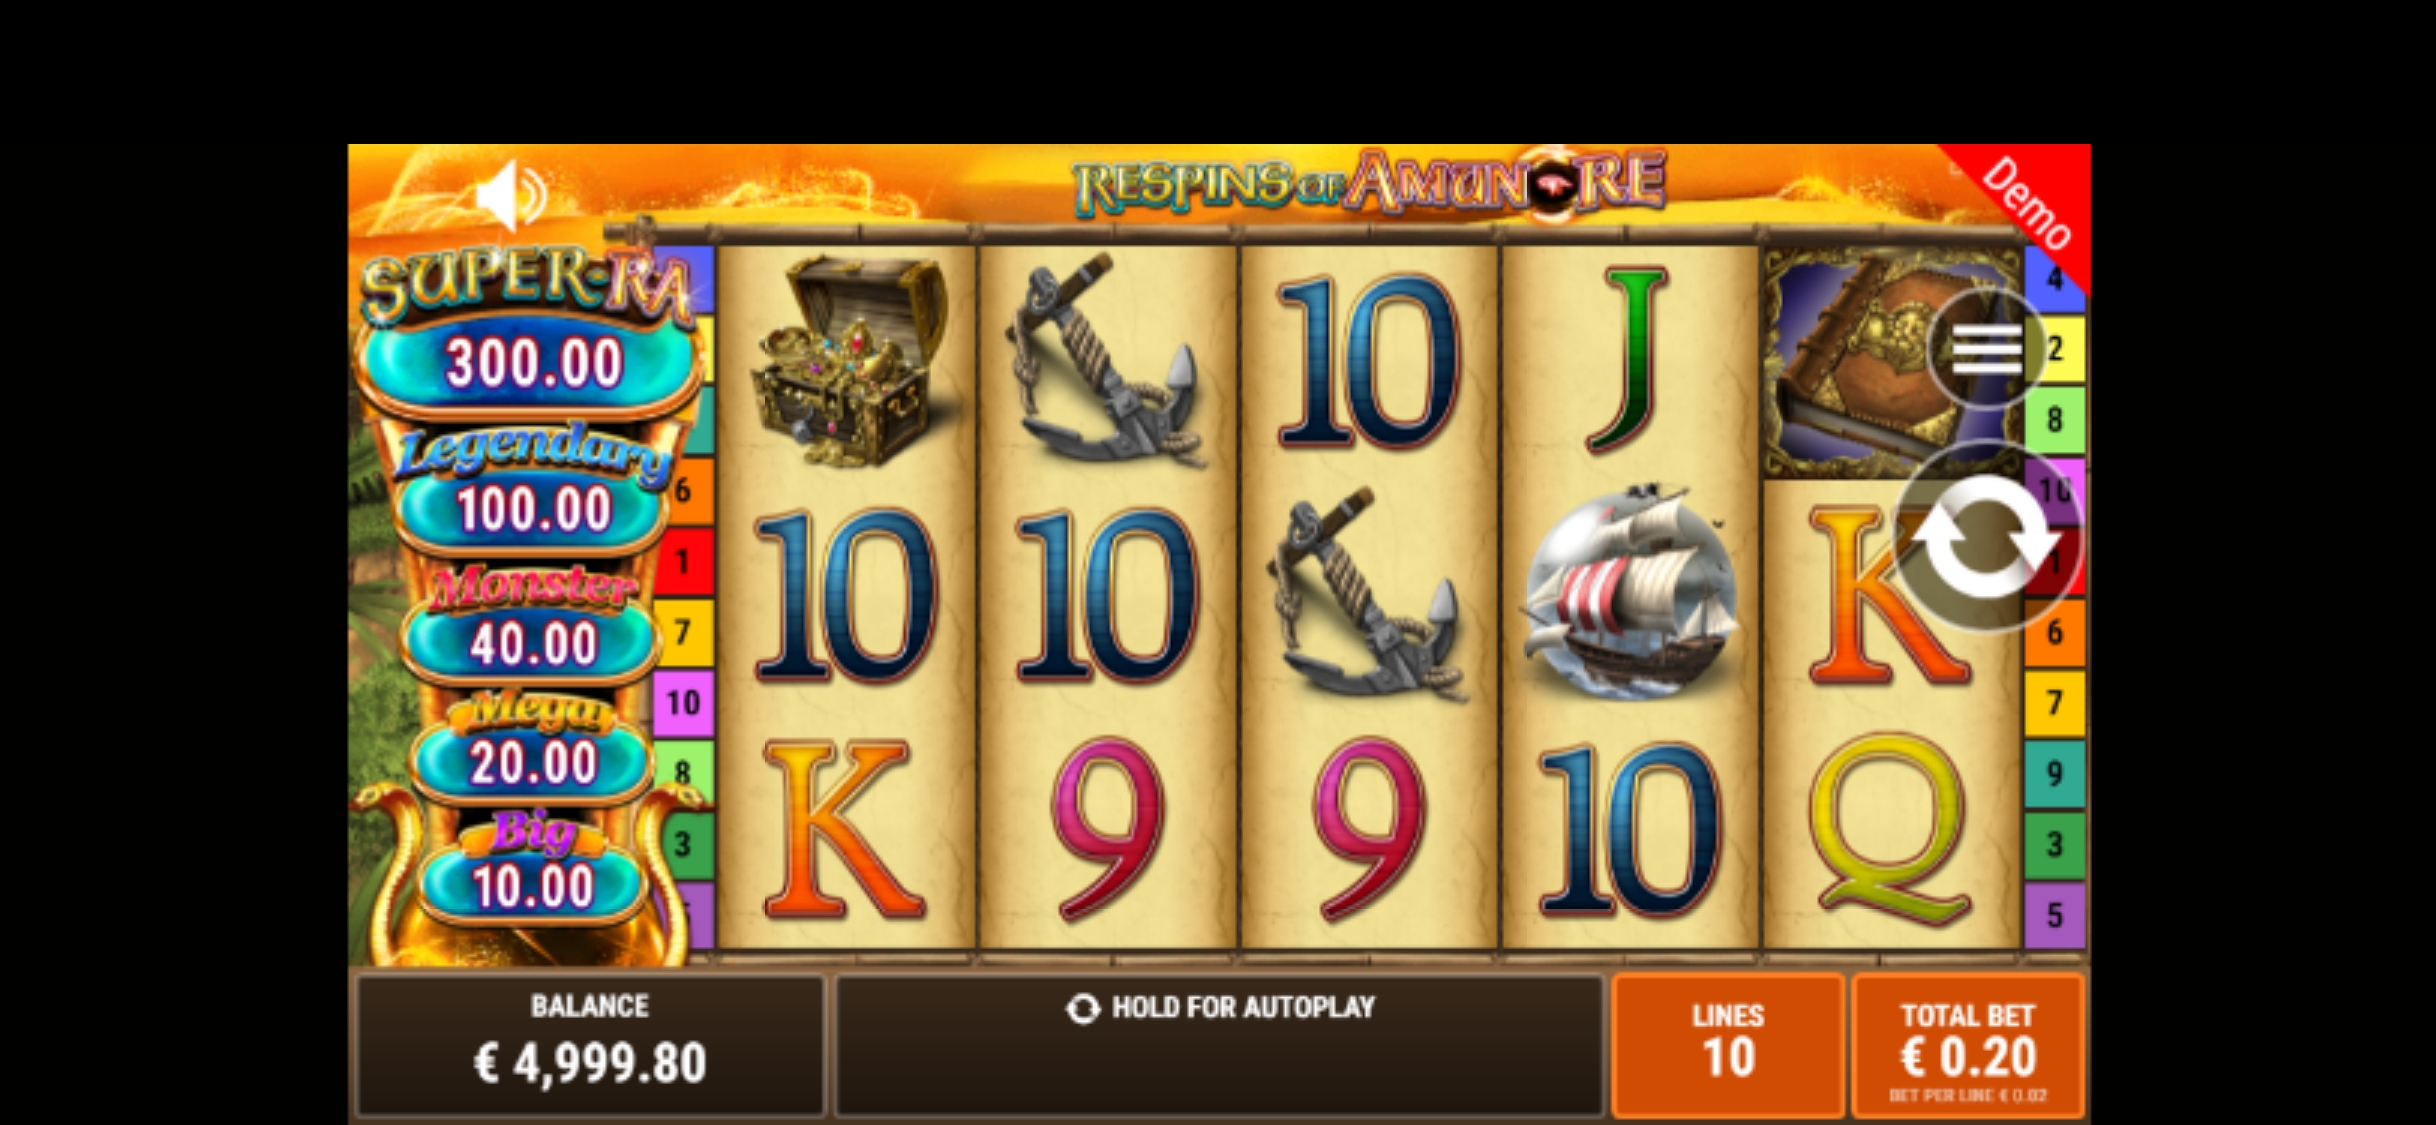 Jokerino Mobile Slot Games Review